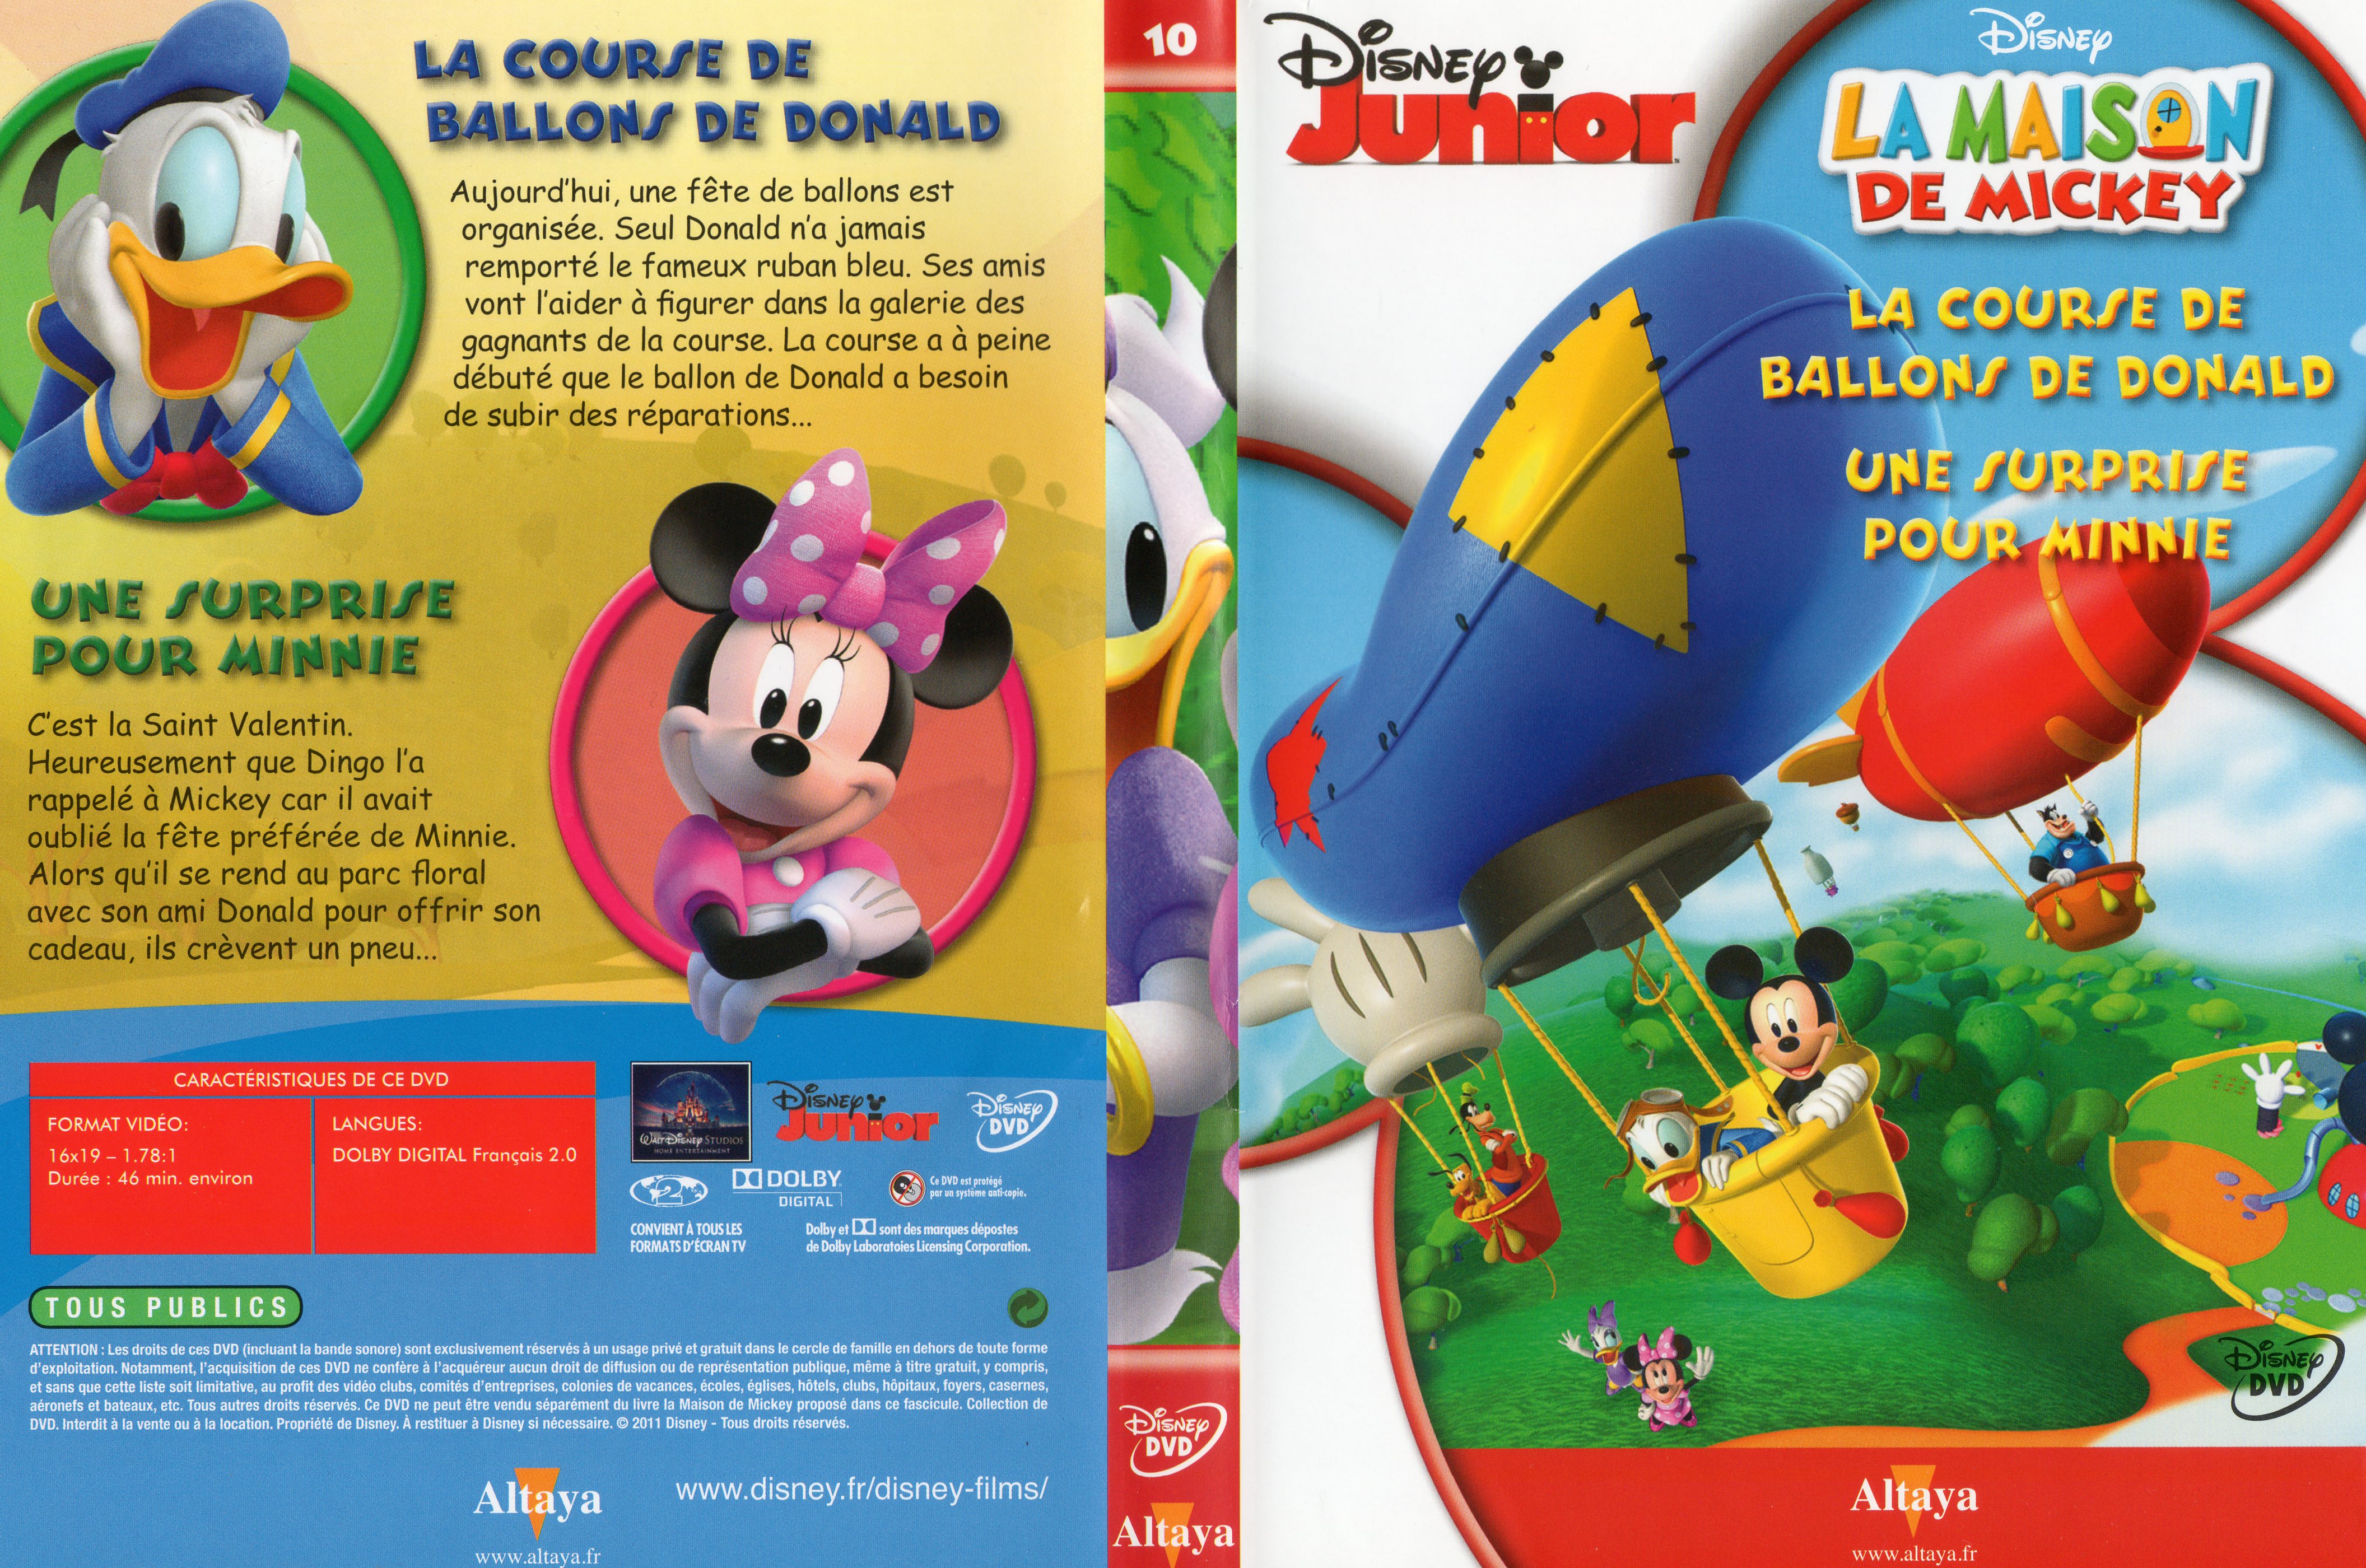 Jaquette DVD La maison de Mickey DVD 10